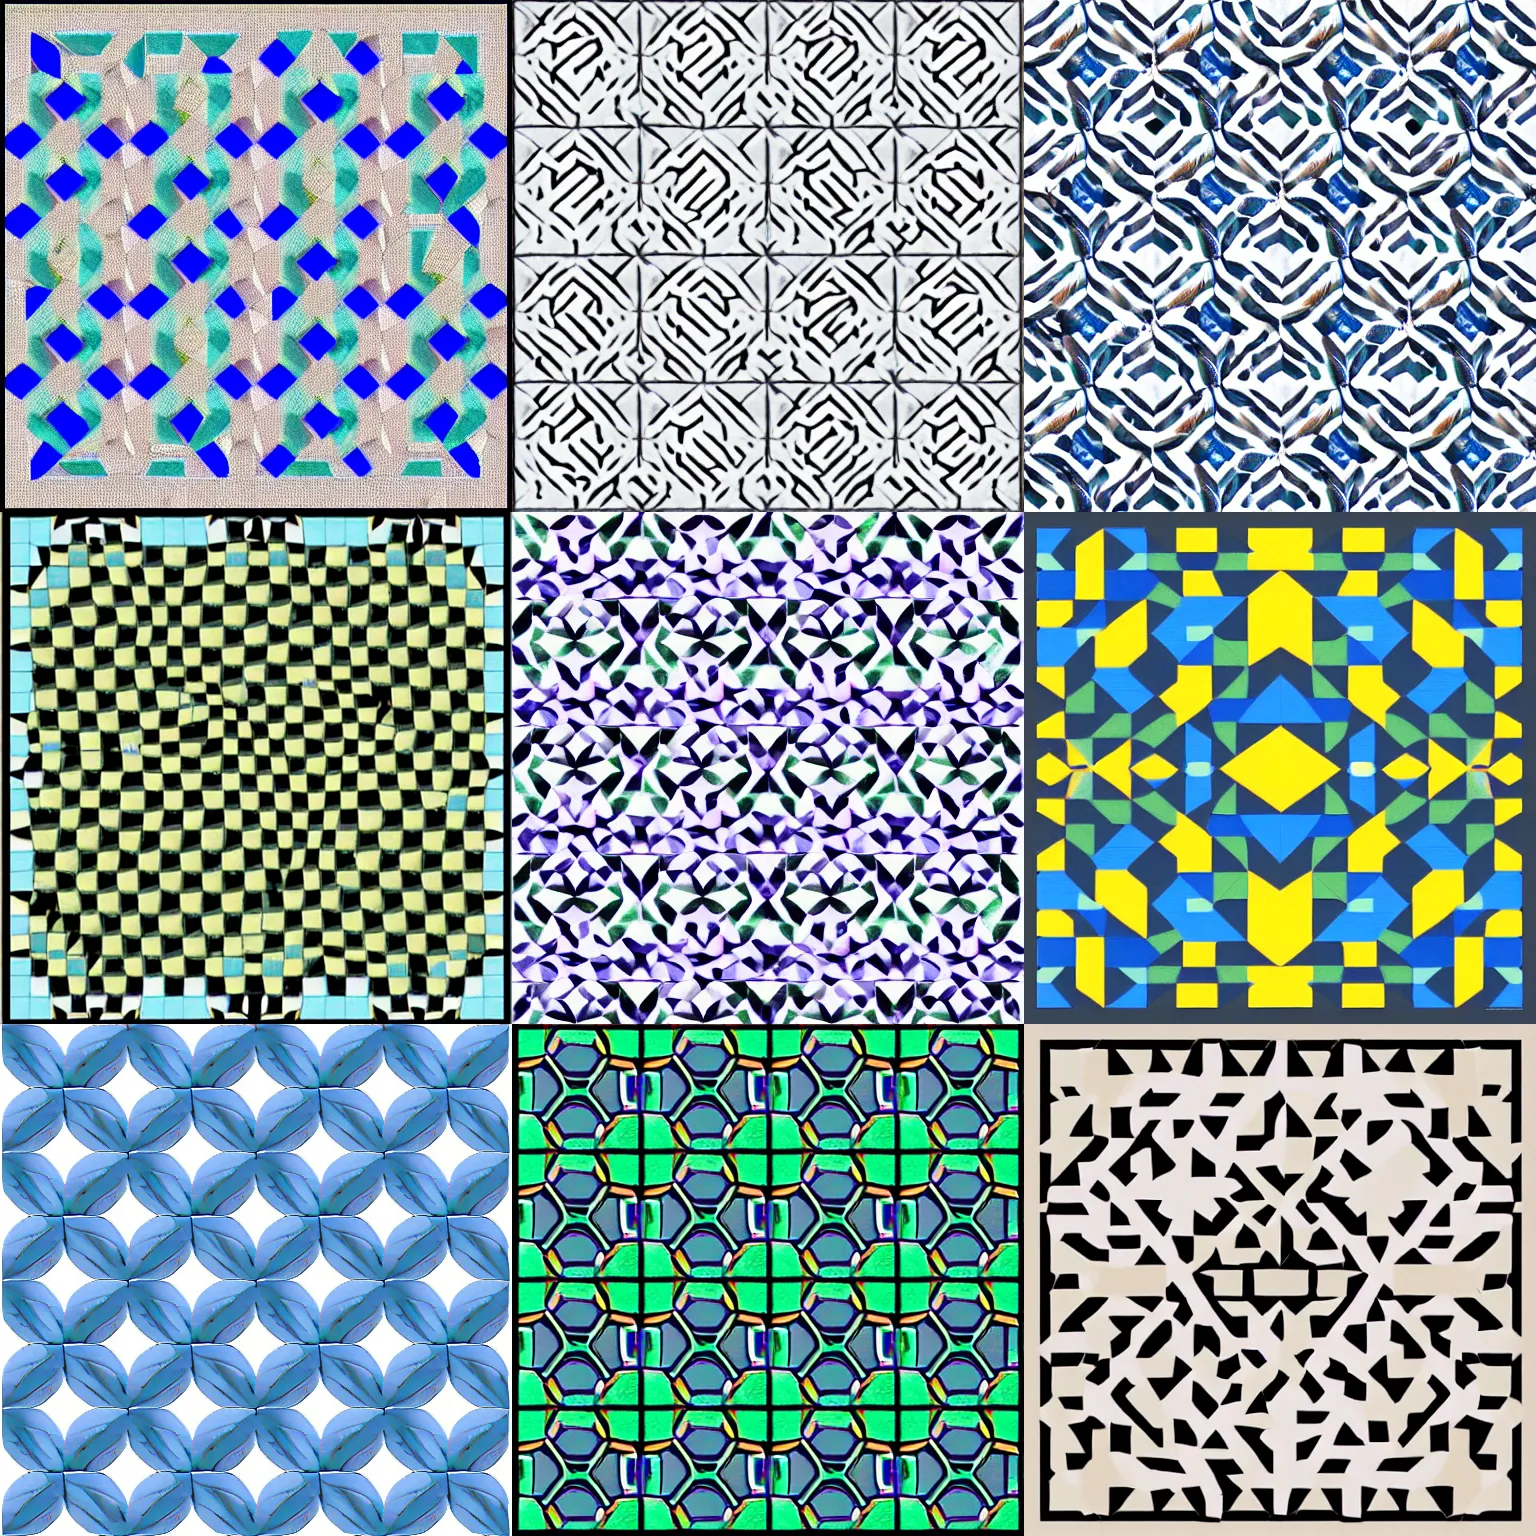 Prompt: tessellating pattern, 64x64